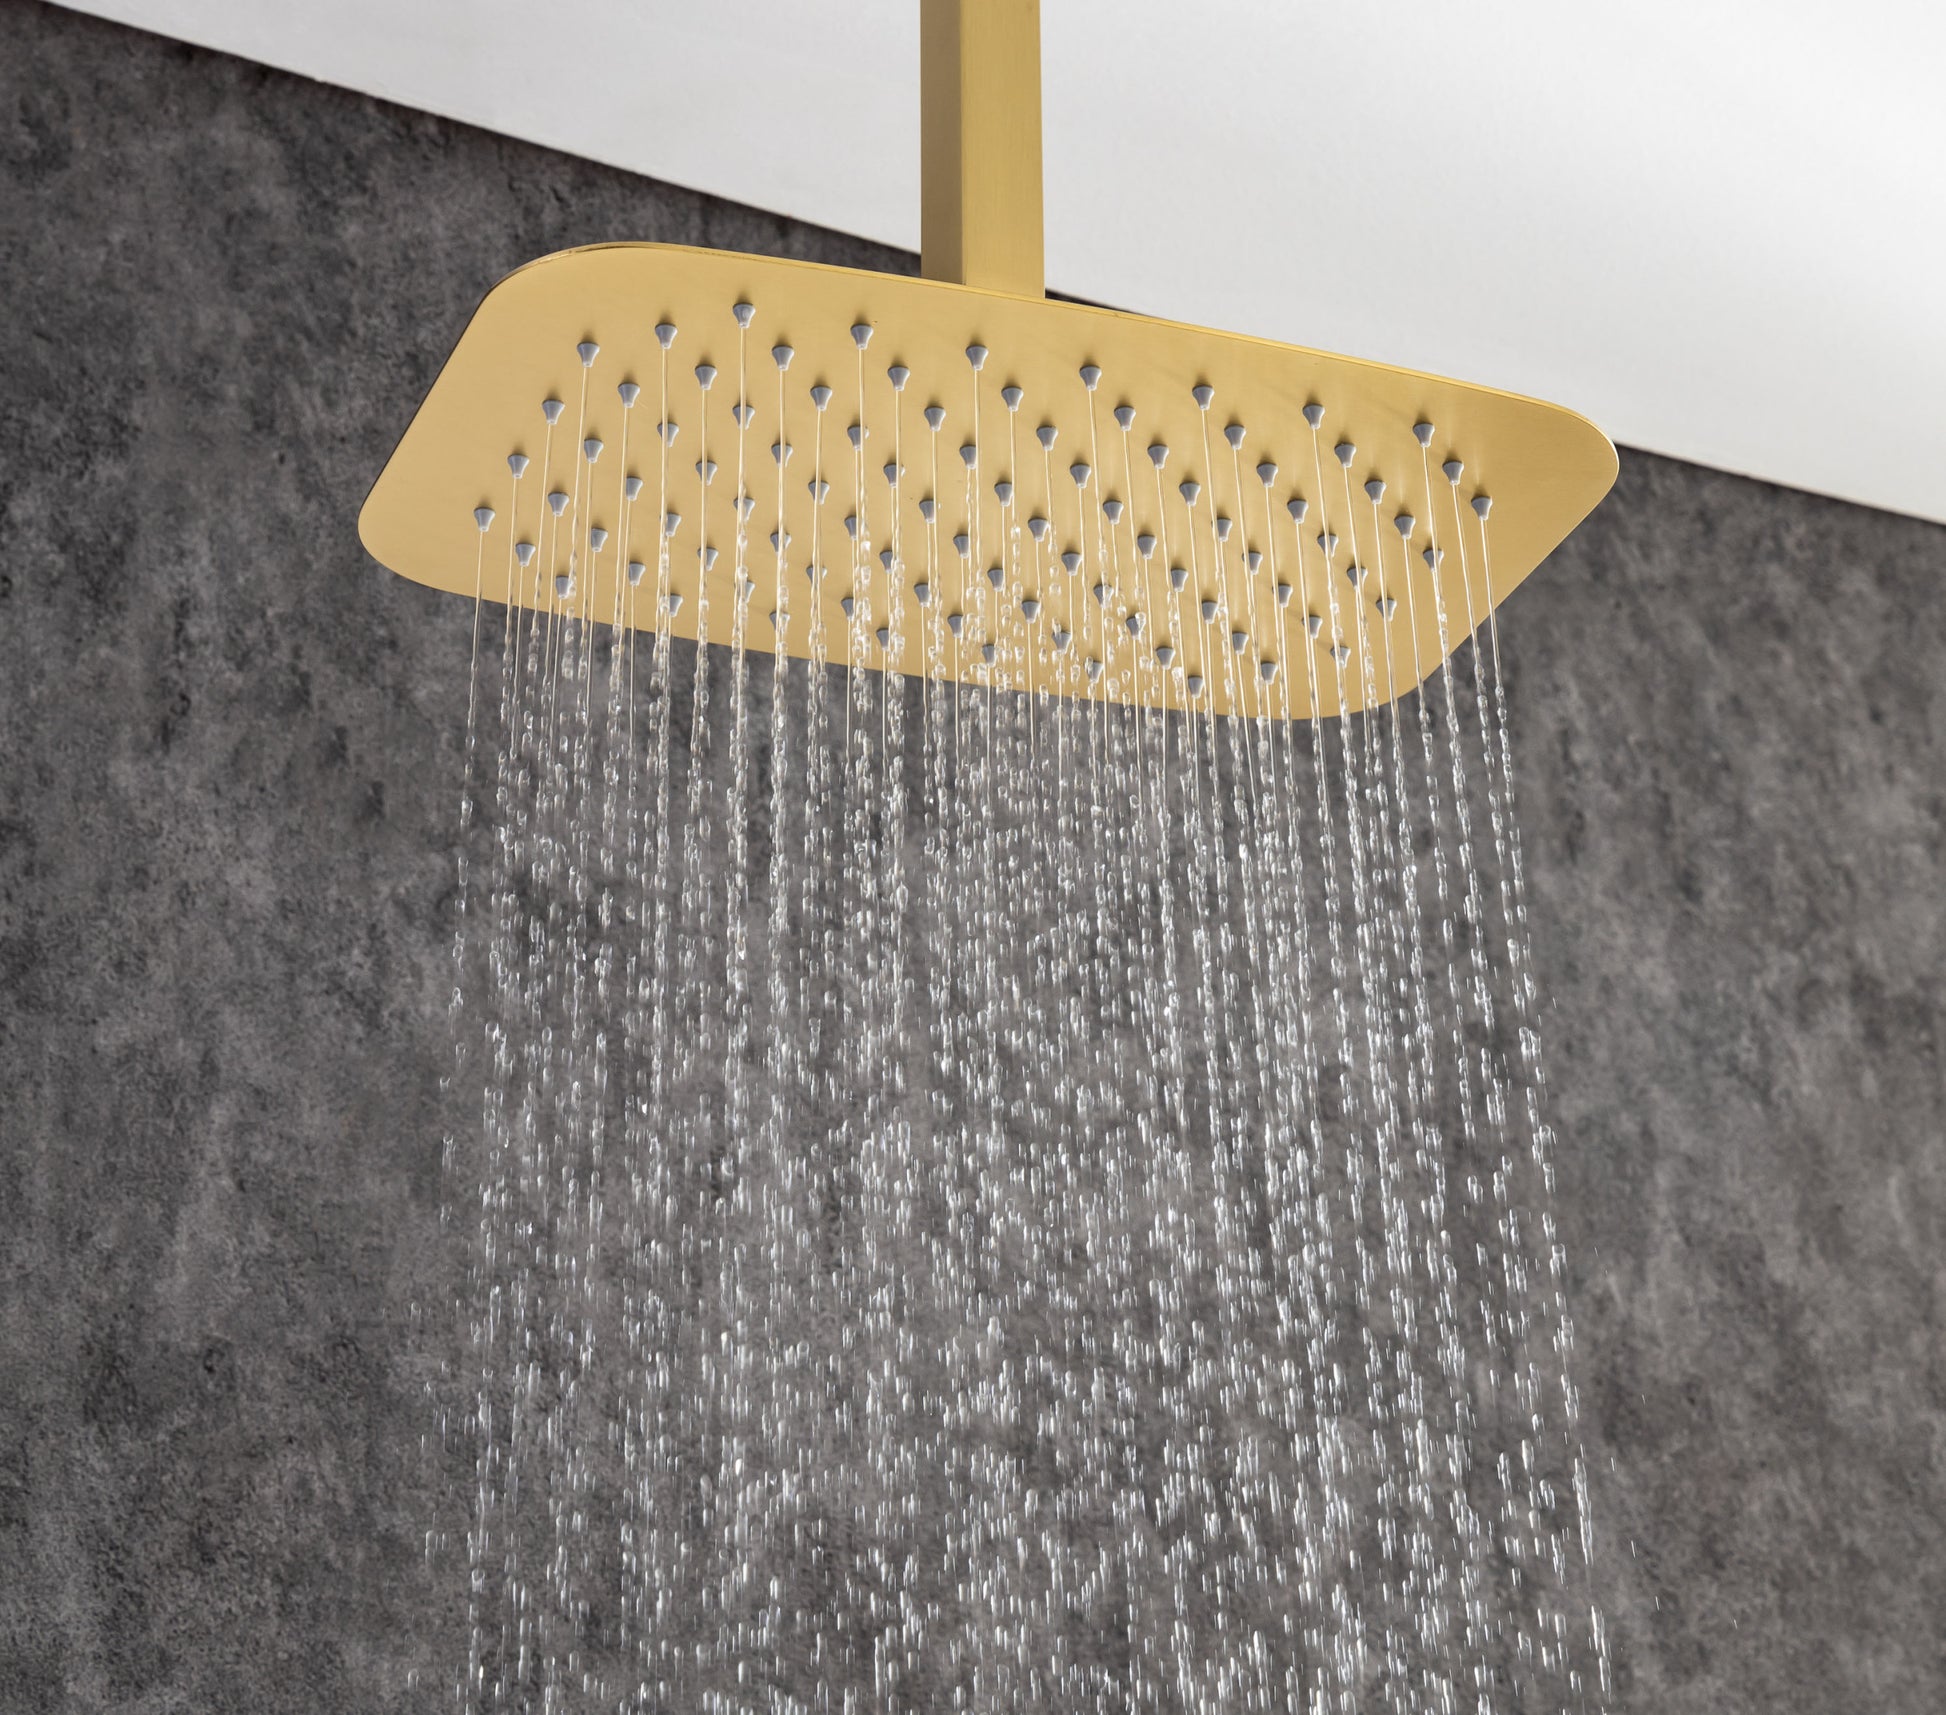 Ceiling Rainfall Shower Faucet Set 3 Function Bathroom golden-brass